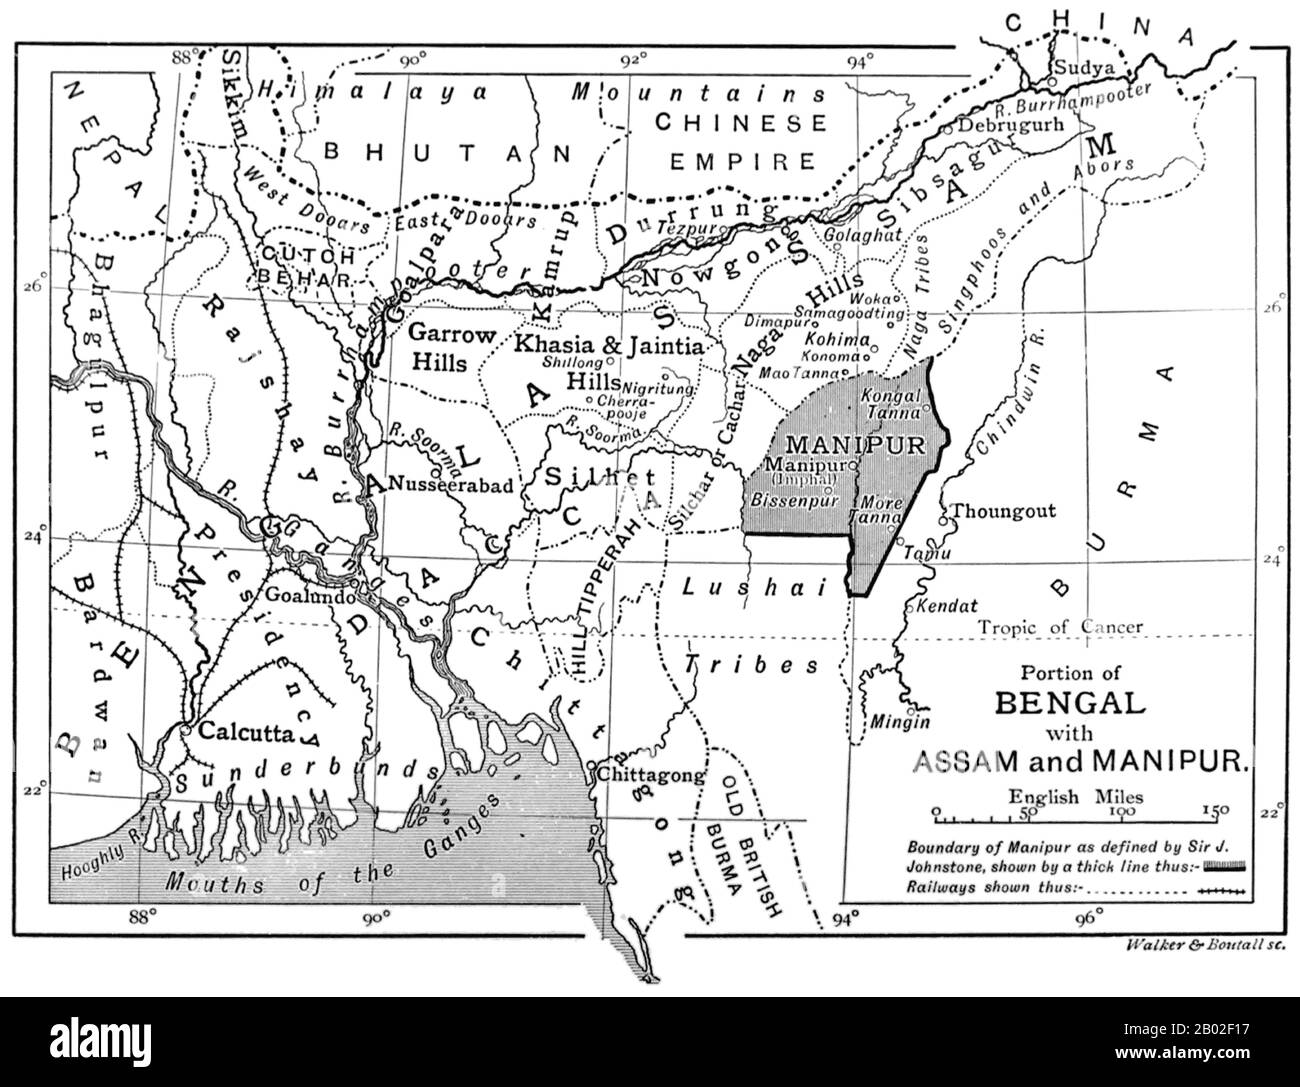 Manipur est un état dans le nord-est de l'Inde, avec la ville d'Imphal comme capitale. Parmi ses habitants figurent le Meetei, le Pangal (musulmans), le Bichnupriya Manipuri, le Naga et le Kuki qui parlent différentes langues des branches de la famille Tibeto-Burman. L'État est délimité par Nagaland au nord, Mizoram au sud et Assam à l'ouest; la Birmanie se trouve à l'est. Il couvre une superficie de 22 327 kilomètres carrés (8 621 mi carrés). Banque D'Images